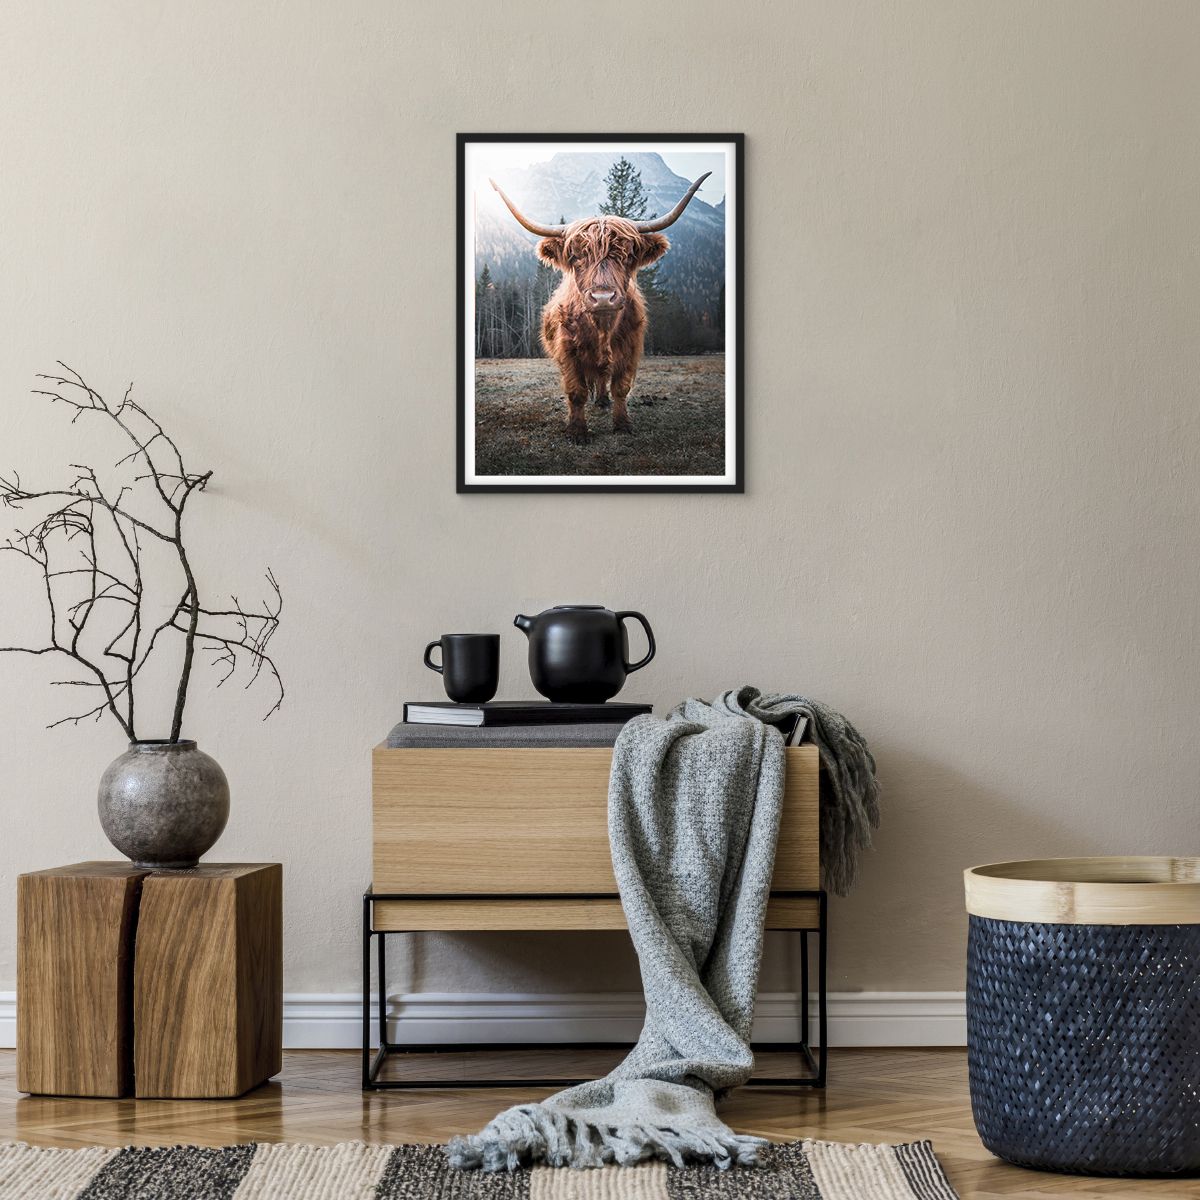 Poster in einem schwarzem Rahmen Berge, Poster in einem schwarzem Rahmen Schottische Kuh, Poster in einem schwarzem Rahmen Weide, Poster in einem schwarzem Rahmen Tiere, Poster in einem schwarzem Rahmen Landschaft